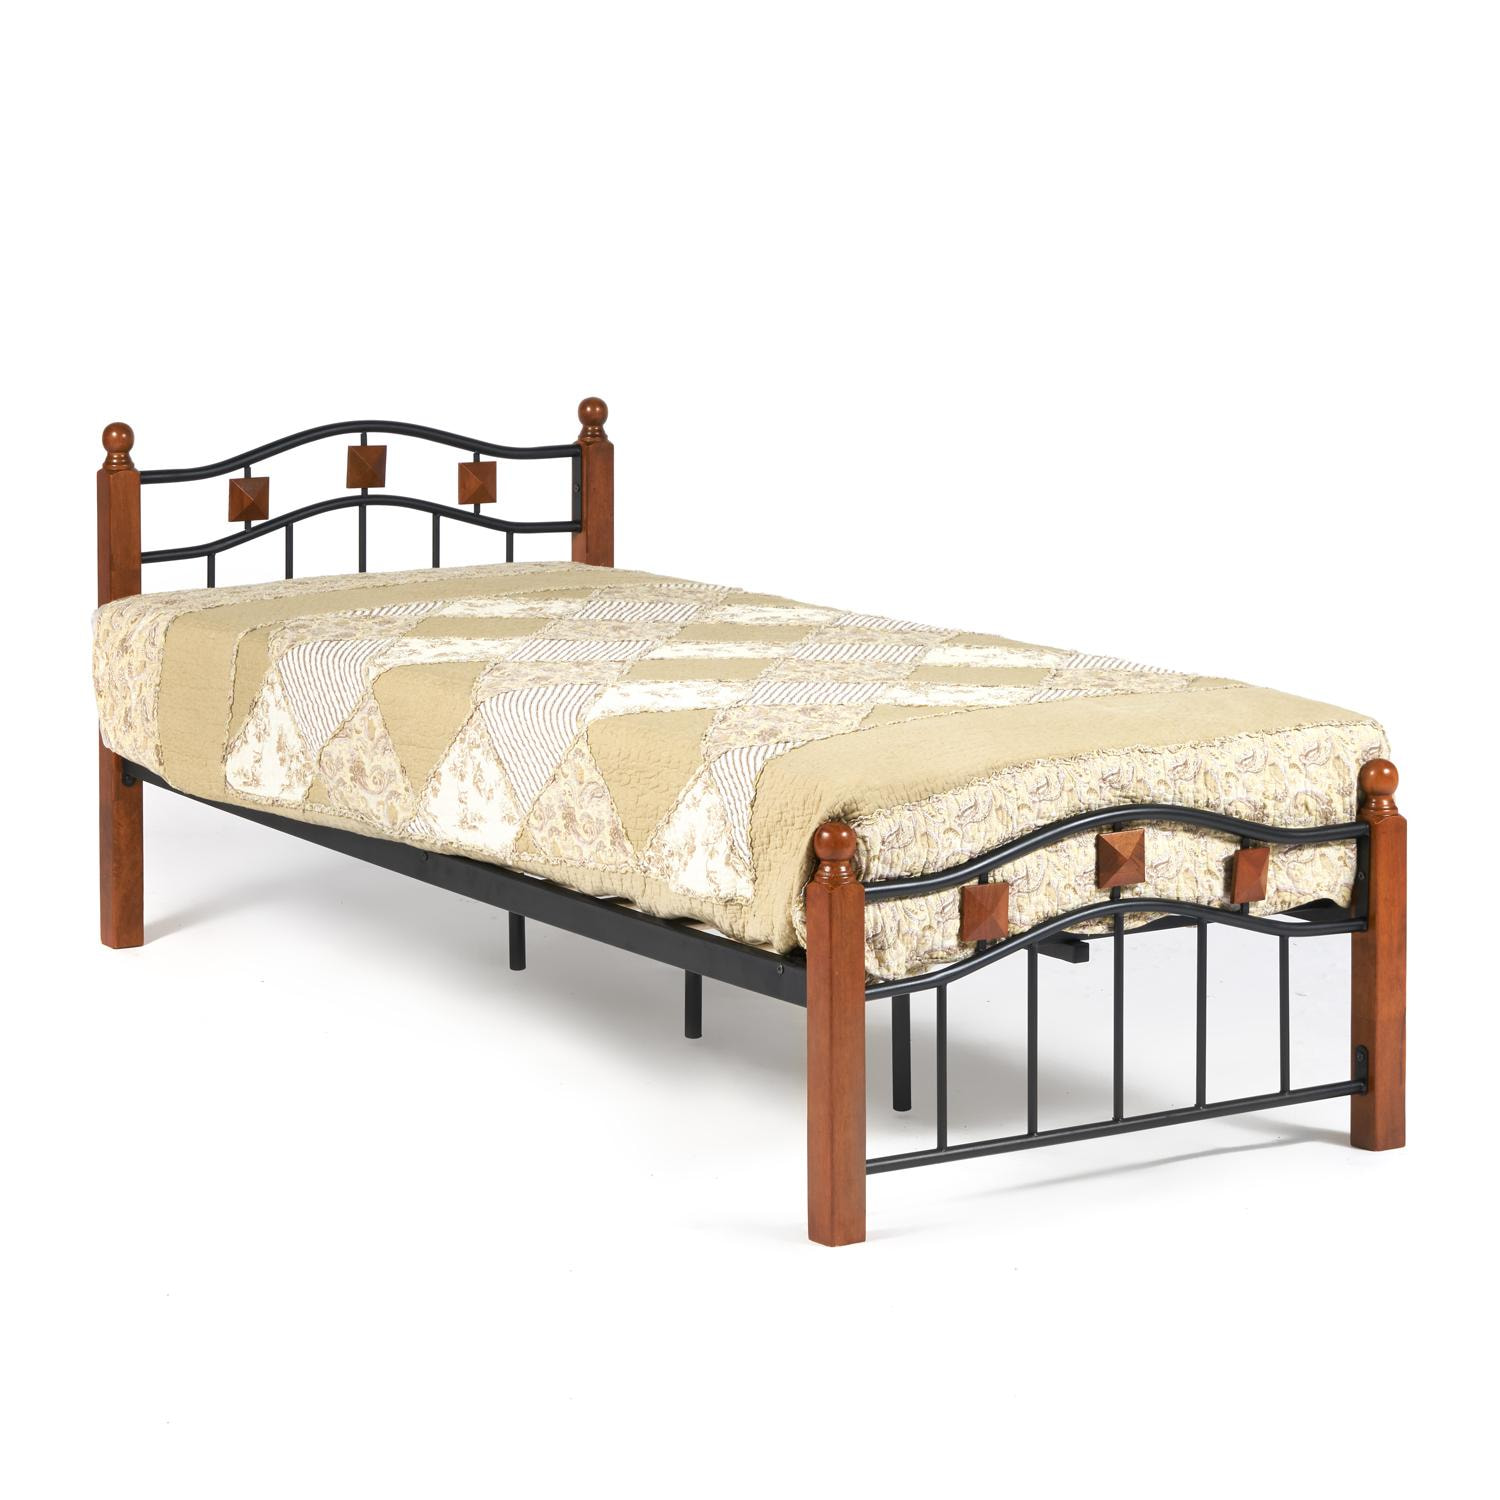 Кровать AT-126 Wood slat base дерево гевея/металл, 90*200 см (Single bed), красный дуб/черный